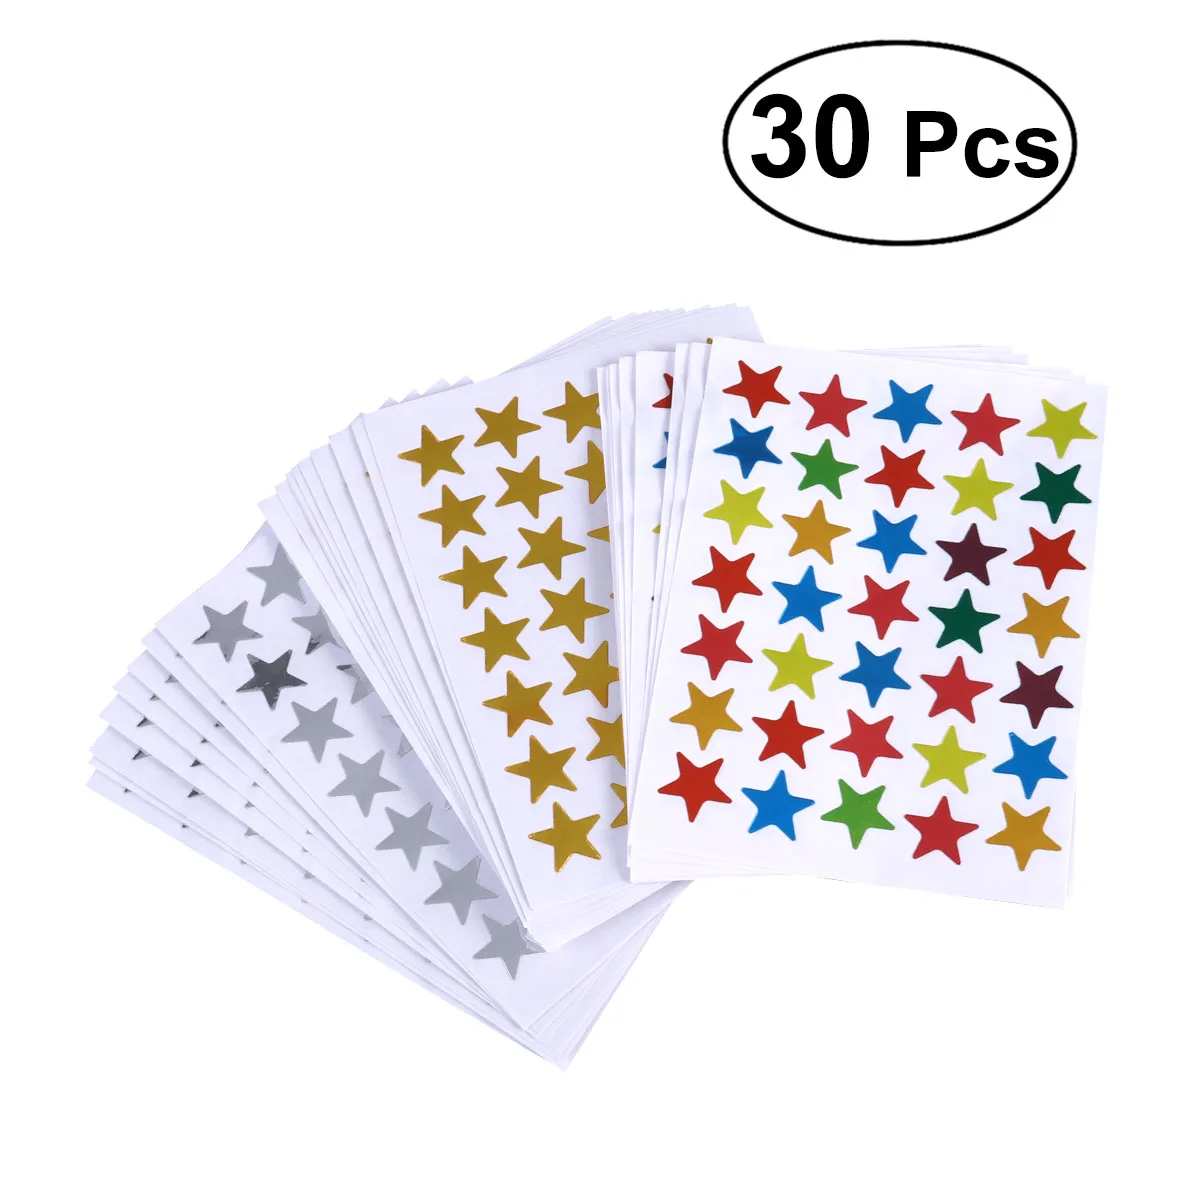 30 листов красочные счетные Стикеры-звезды золото серебро Красочные самоклеющиеся наклейки звезды для учительницы вдохновляют детей играть